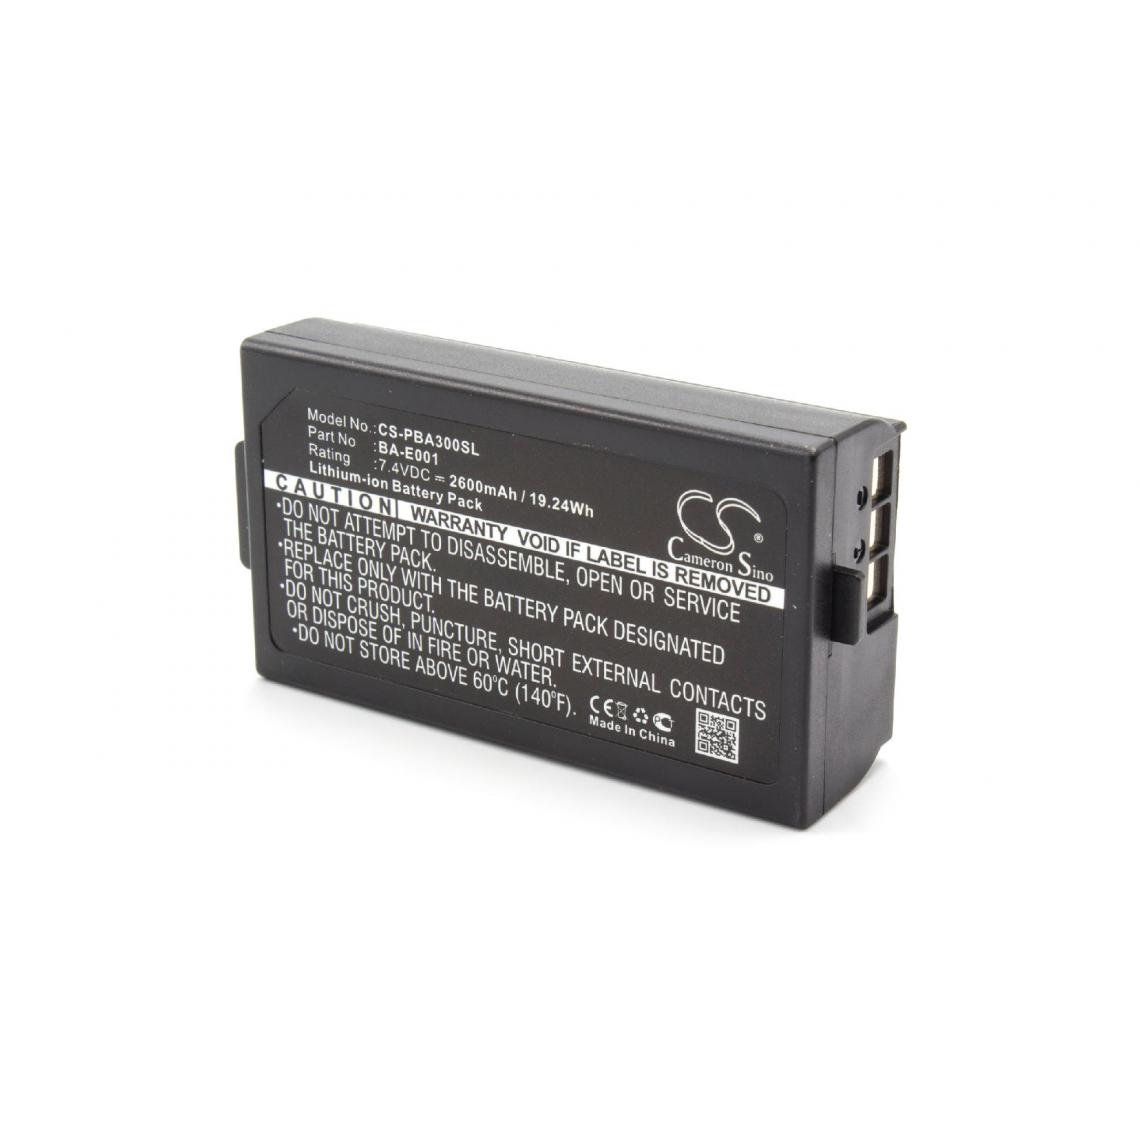 Vhbw - vhbw Batterie compatible avec Sonel PAT-10, PAT-2 imprimante, scanner, imprimante d'étiquettes (2600mAh, 7,4V, Li-ion) - Imprimante Jet d'encre